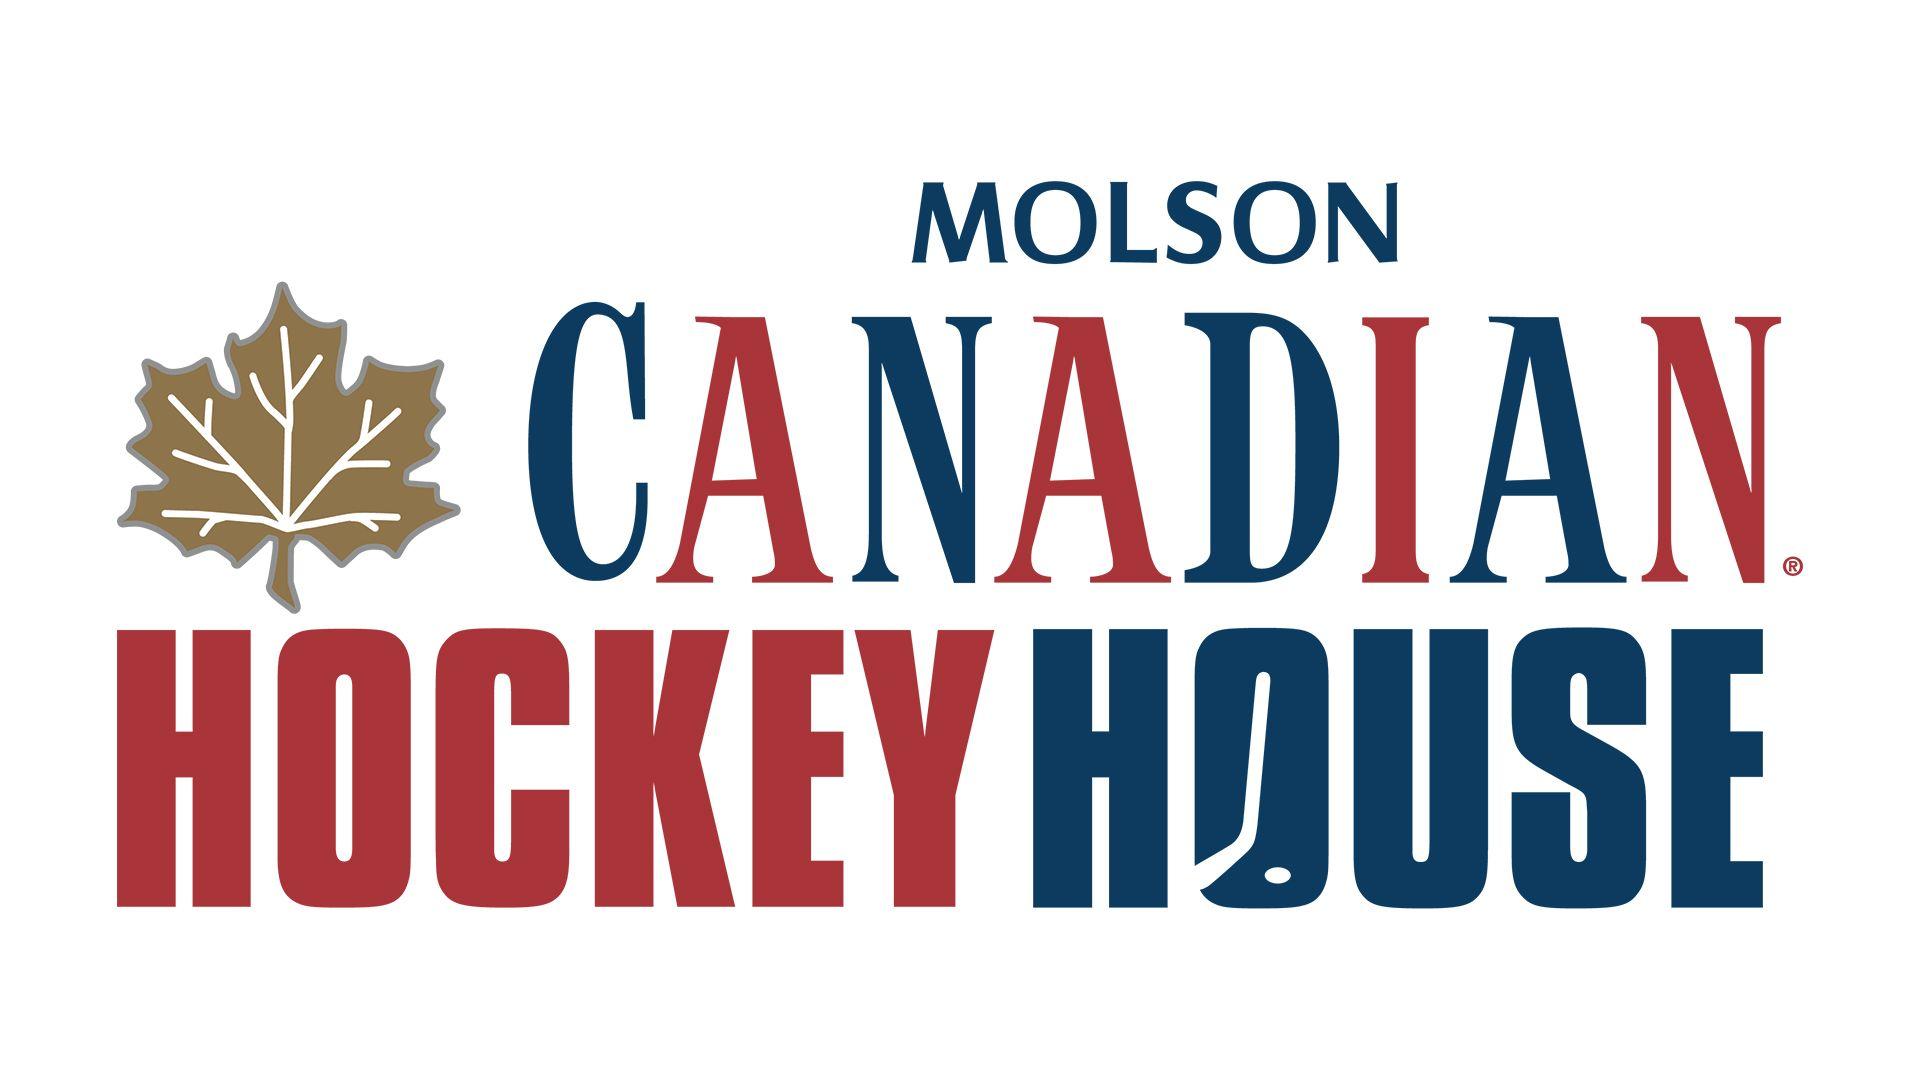 Molson Canadian Logo - Molson Canadian Hockey House